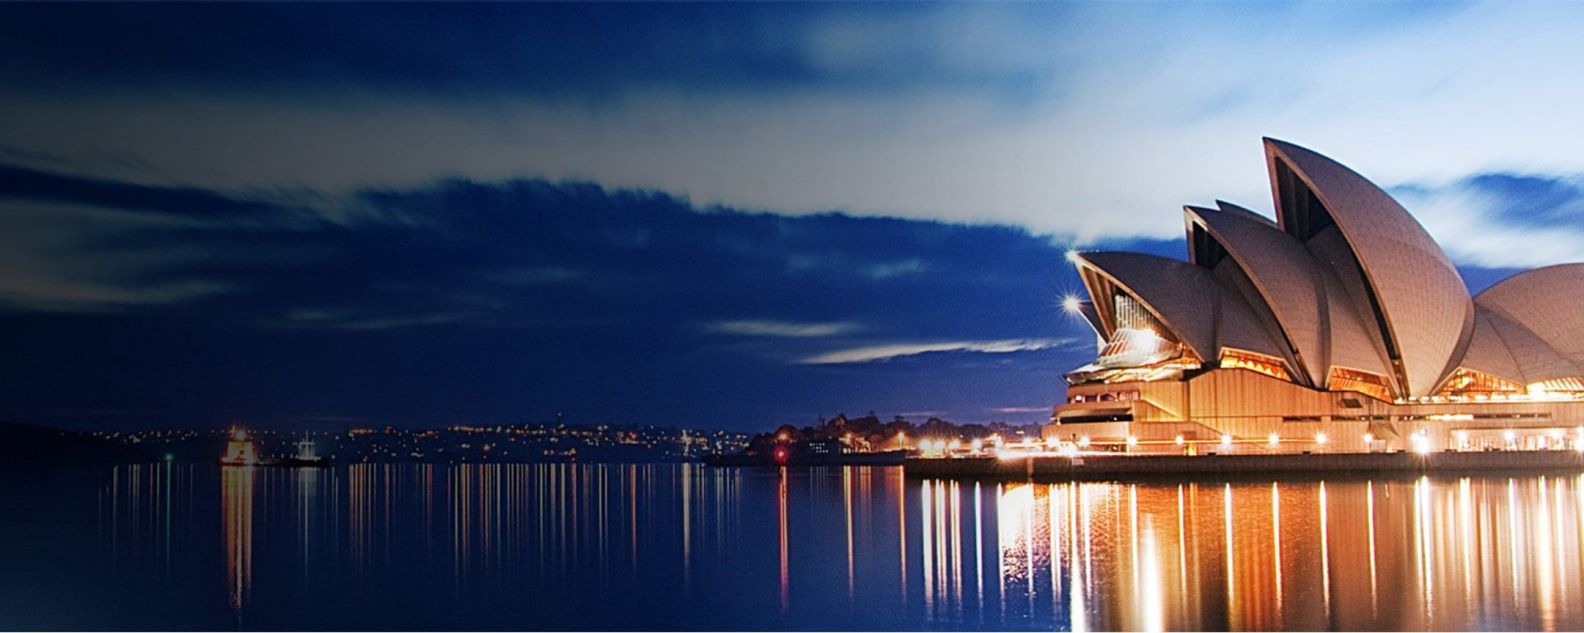 Vue nocturne de l’opéra de Sydney illuminé